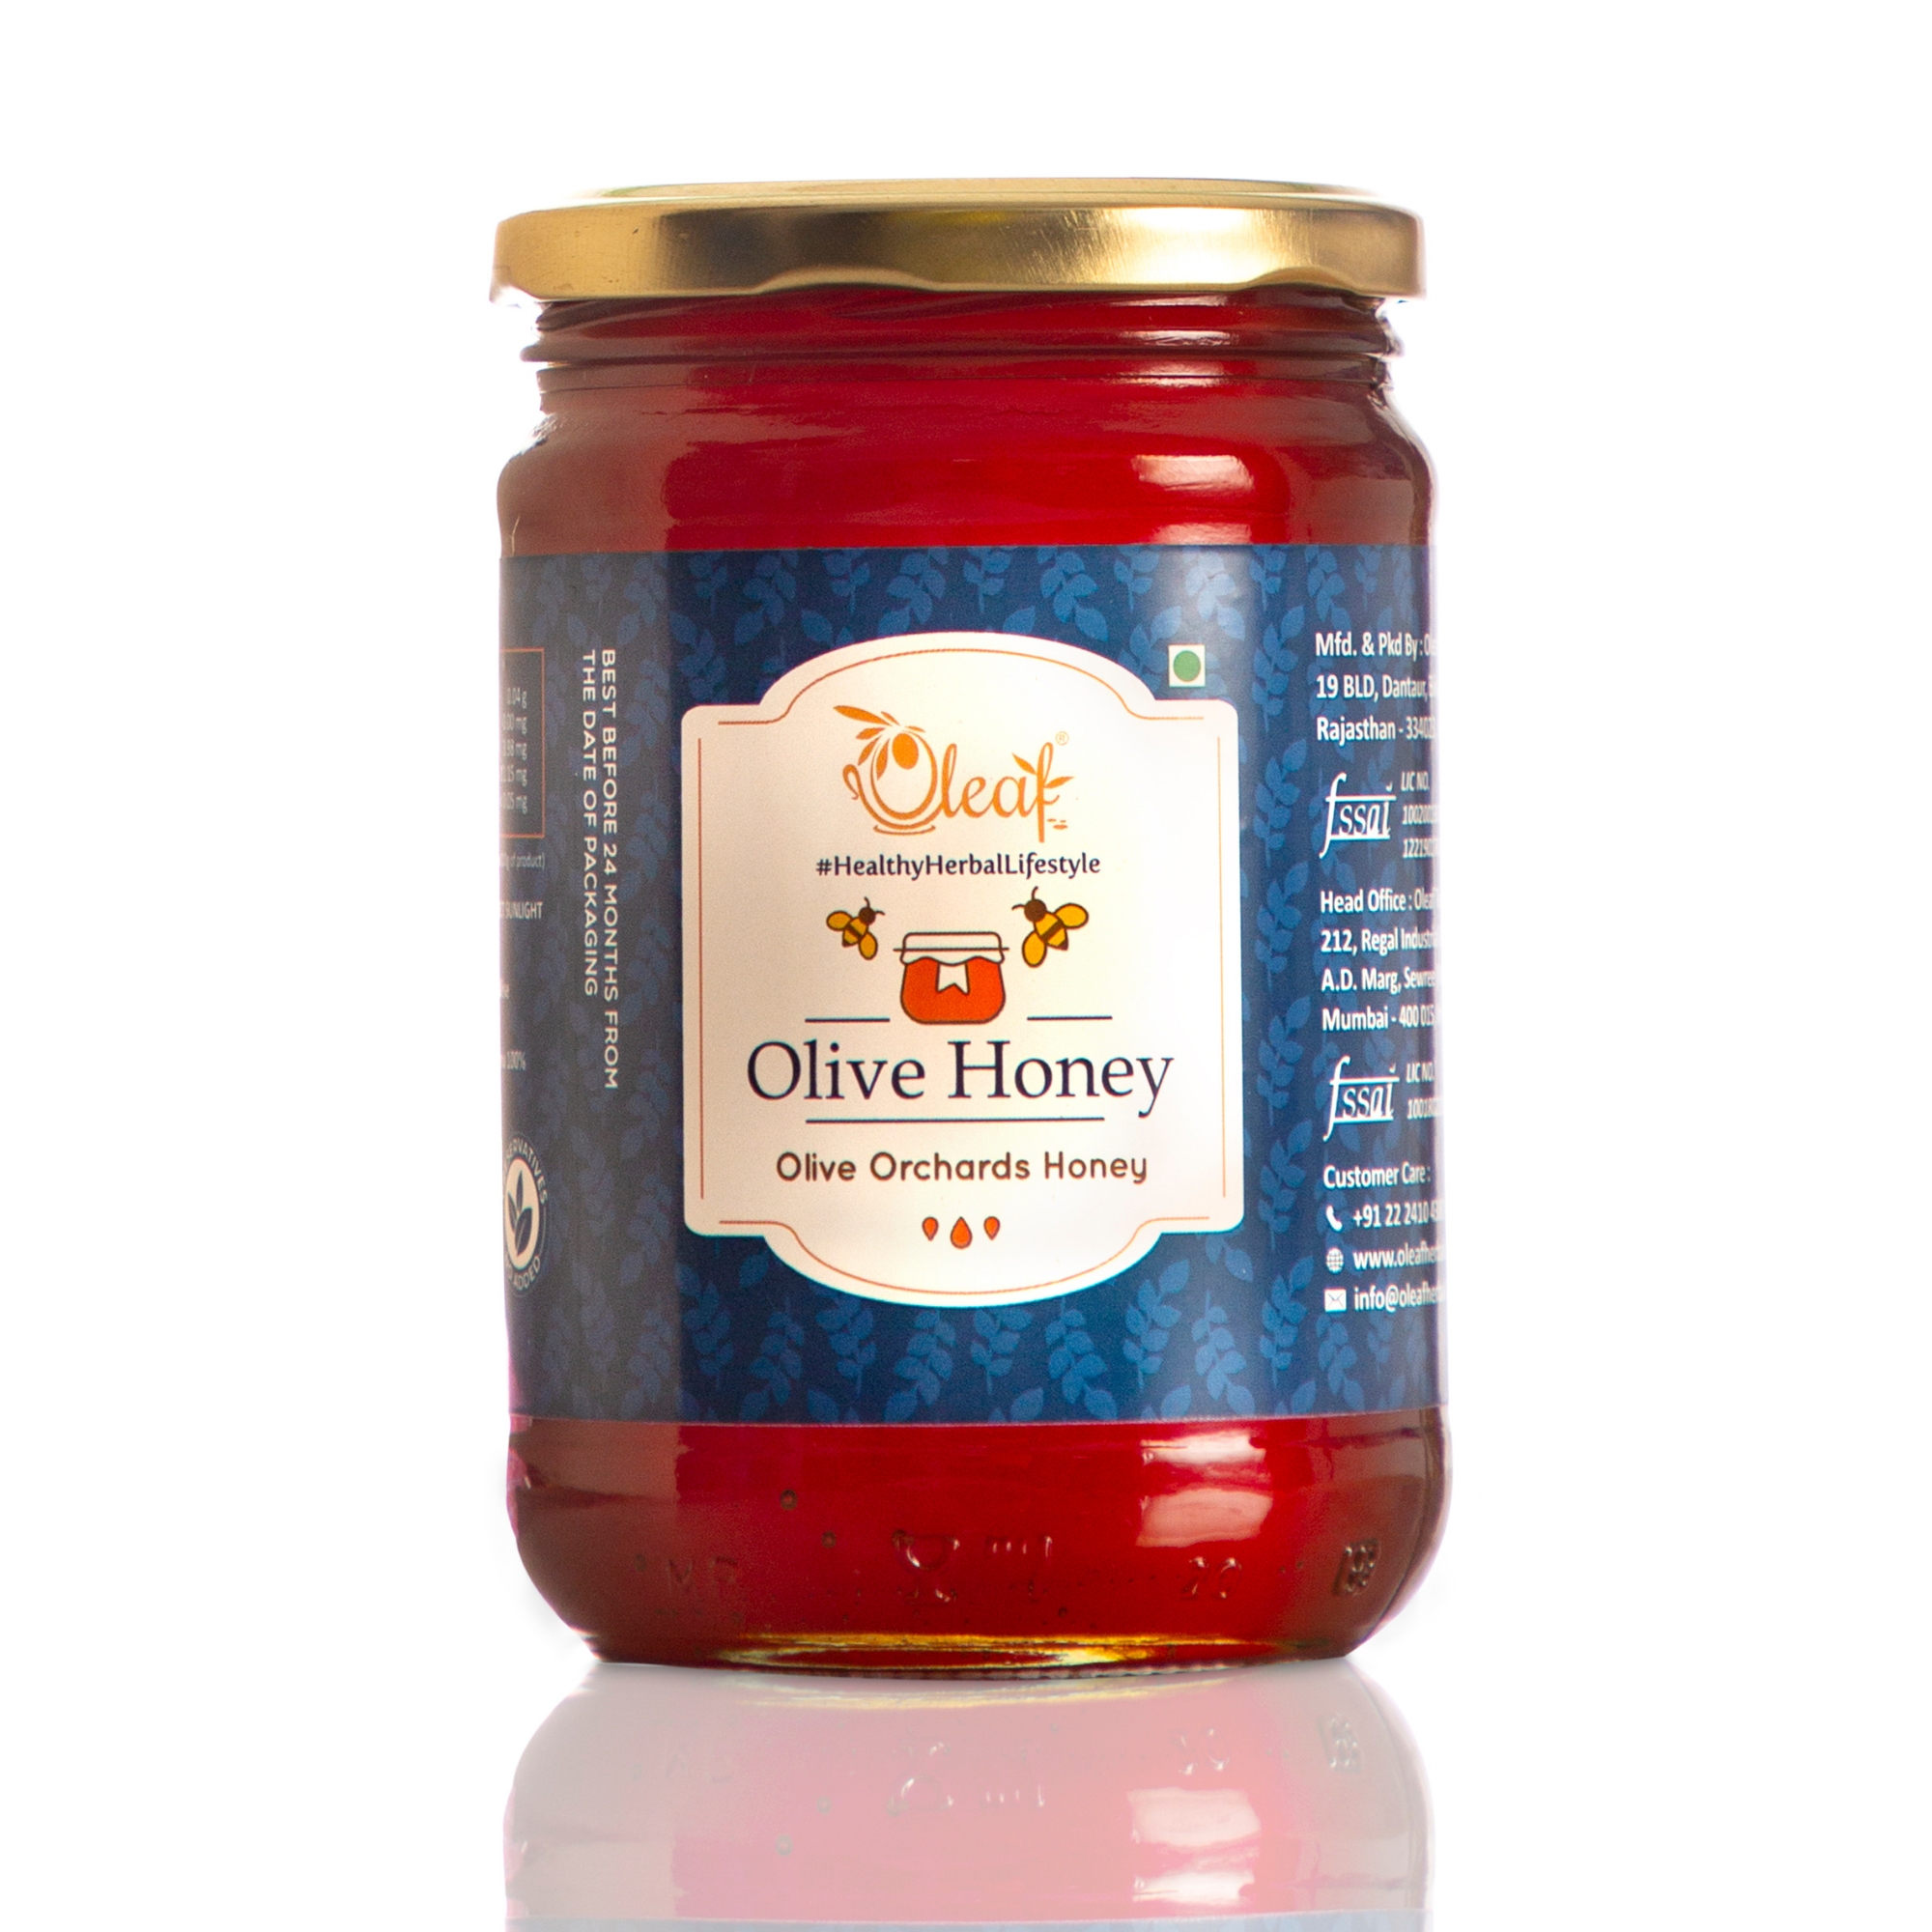 Olive Orchards Honey - 800 Gms - Oleaf